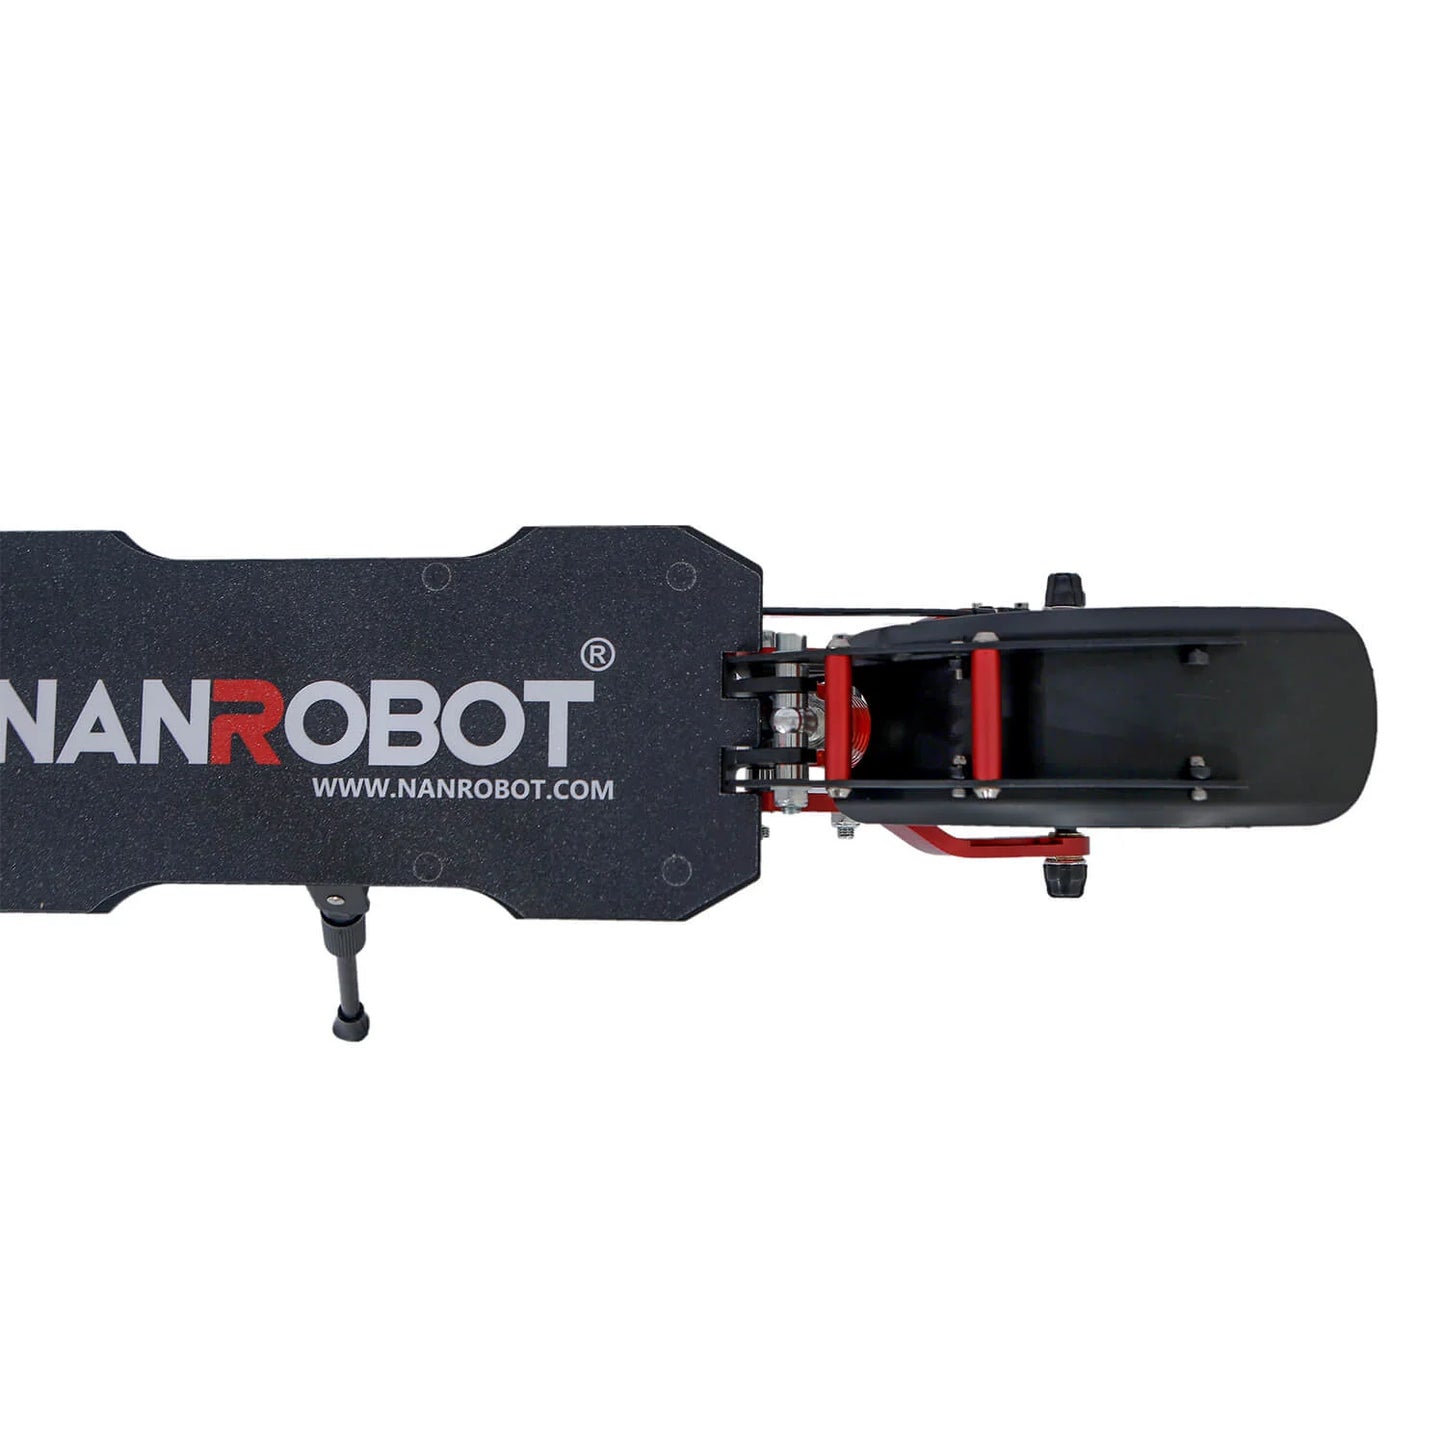 Nanrobot D4+ 3.0